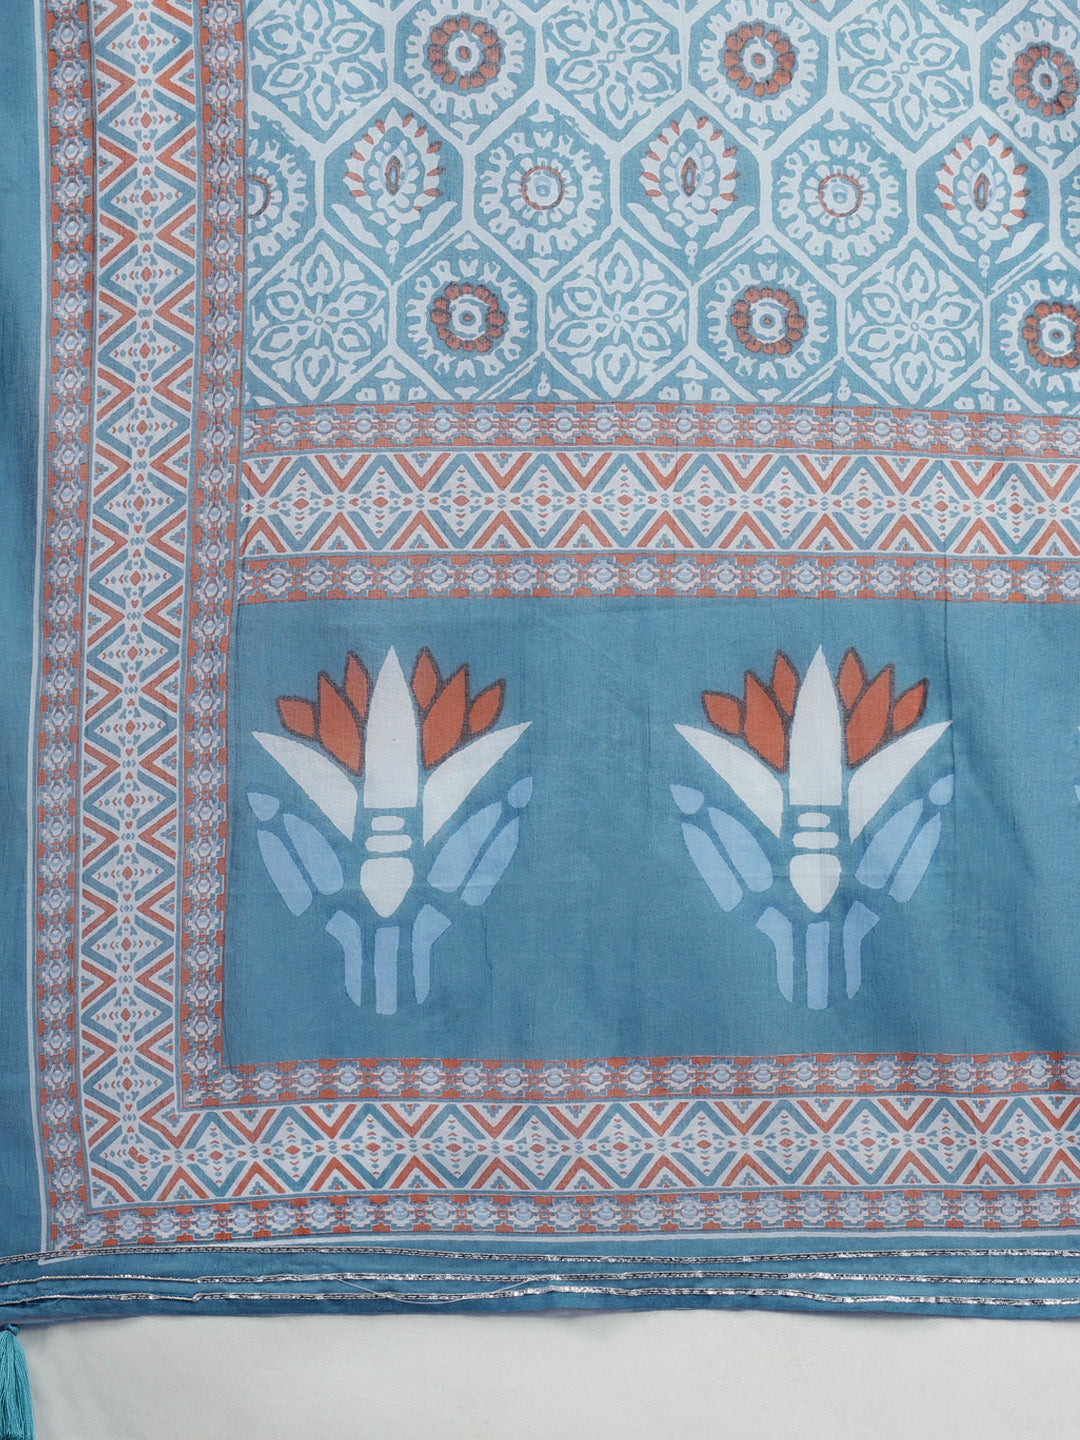 Ishin Women's Blue Embroidered Peplum Kurta with Sharara & Dupatta